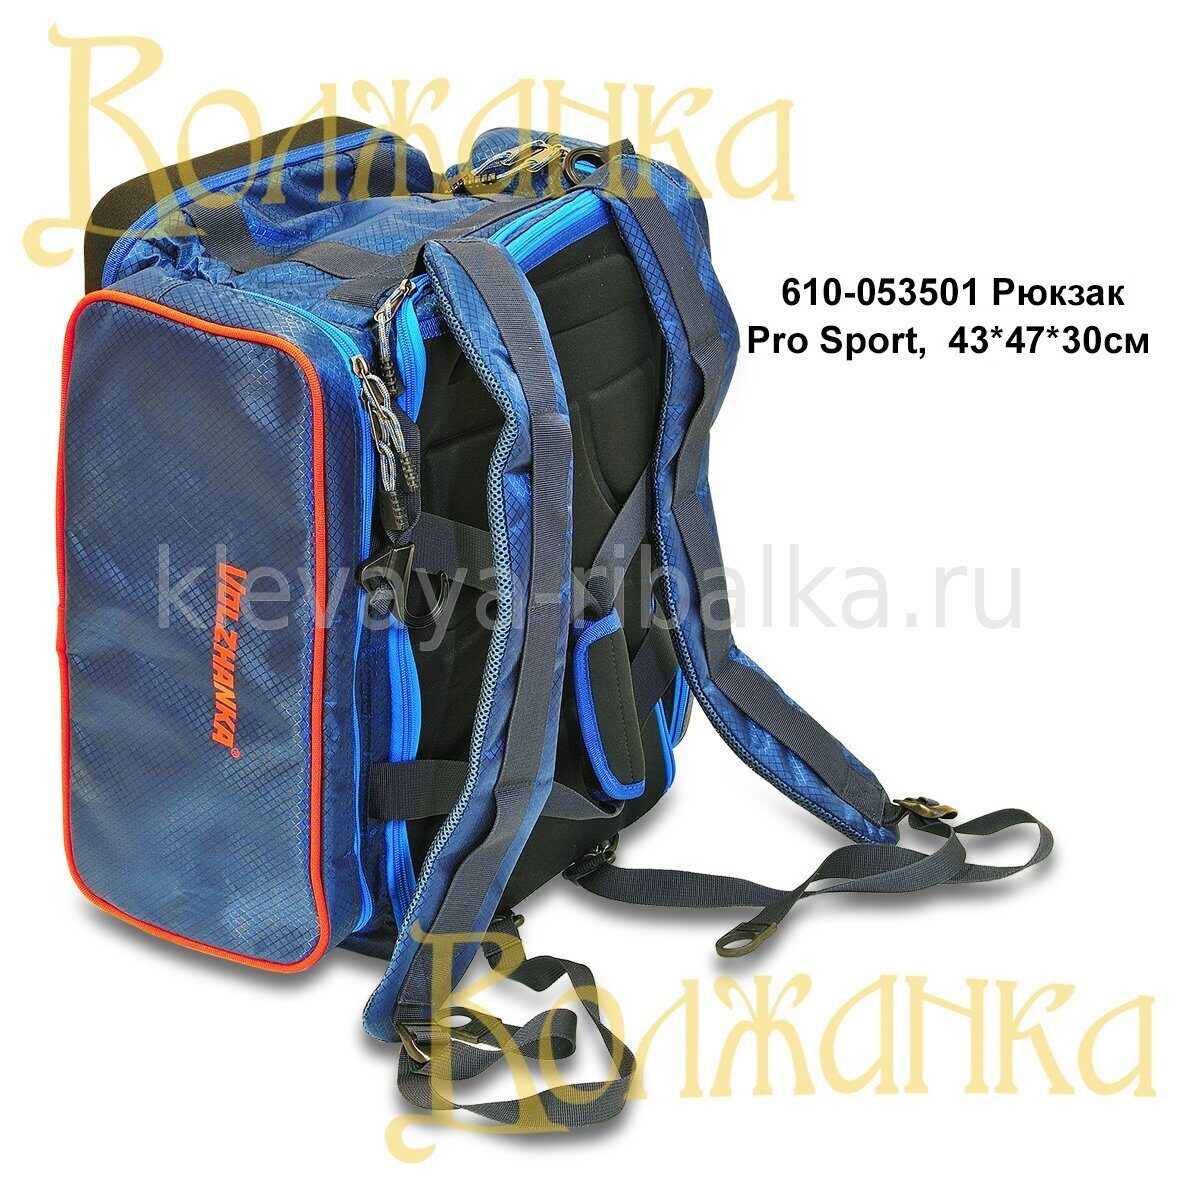 рюкзак волжанка pro sport compact совместимый с креслом